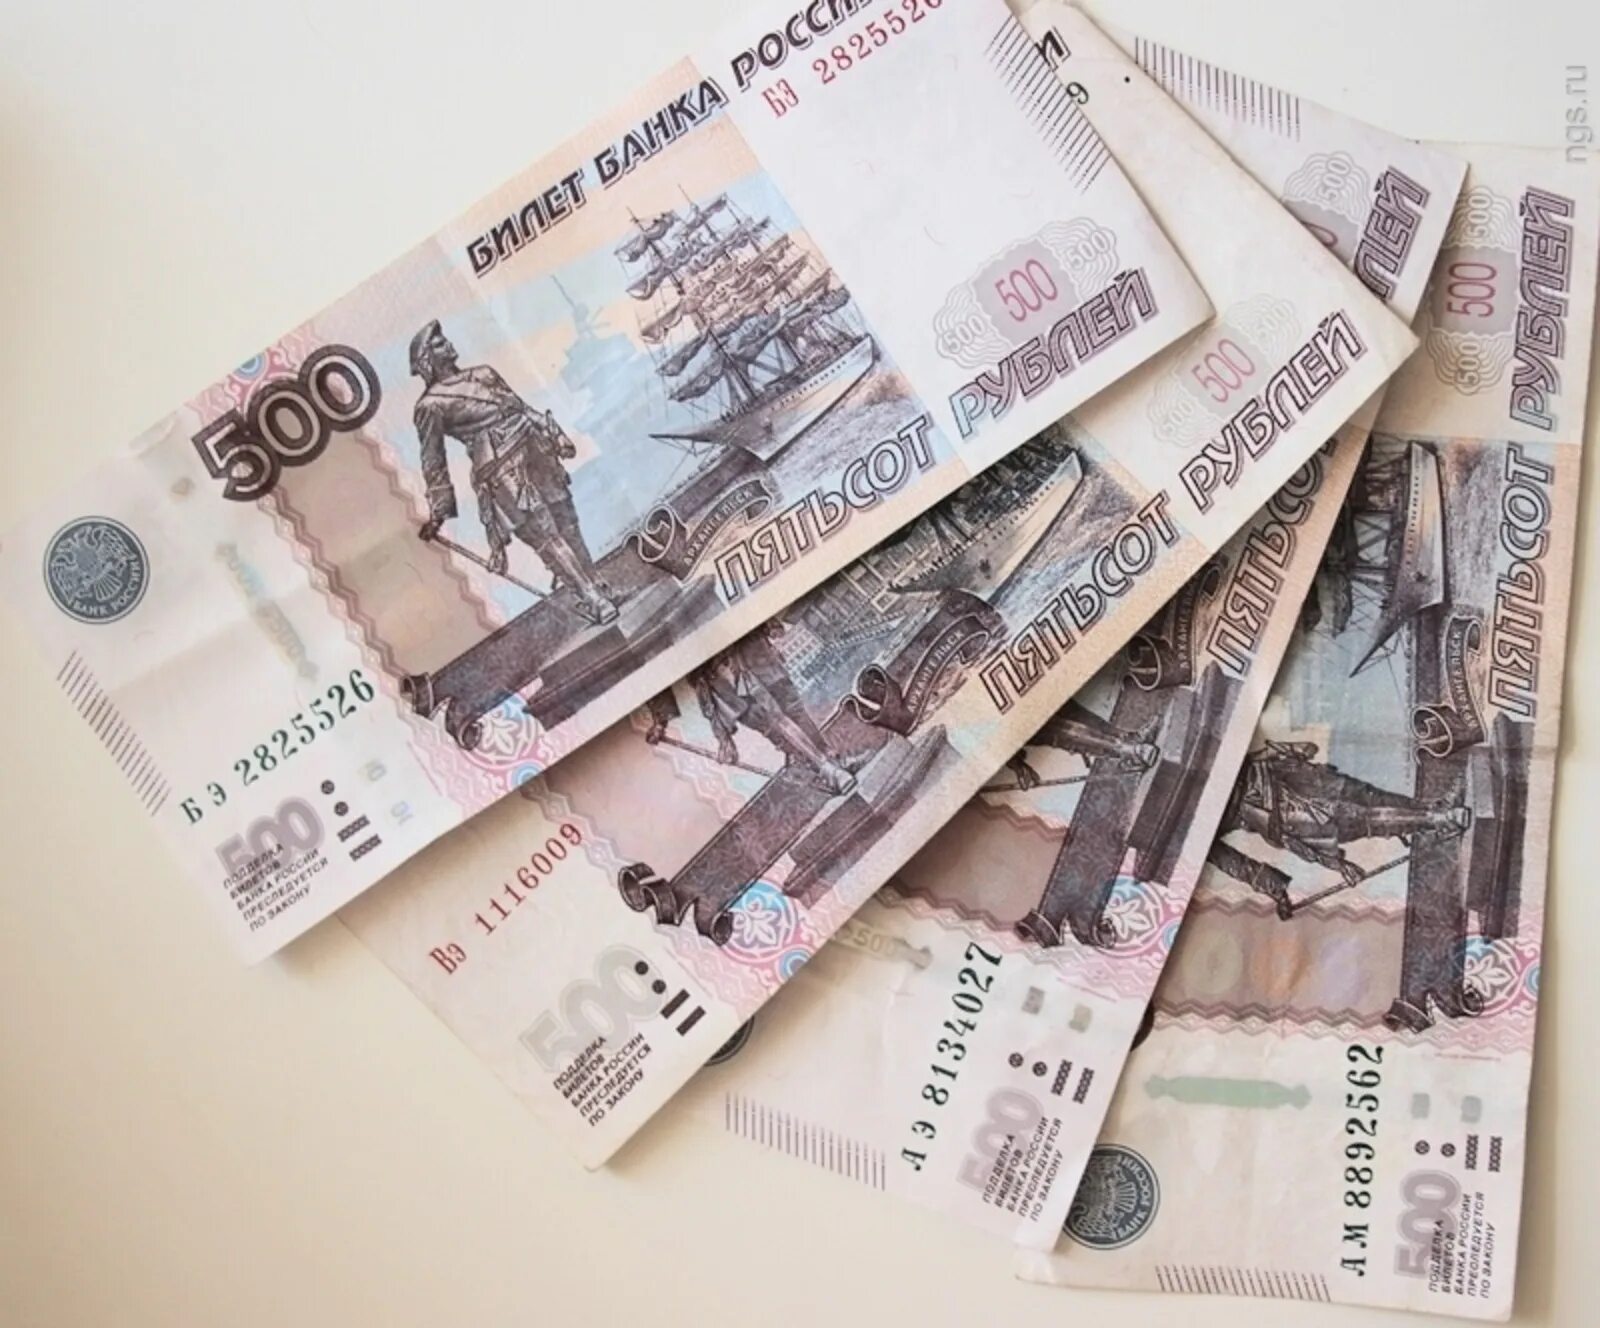 500 Рублей. Деньги 500 рублей. Изображение денежных купюр. Купюра 1000 и 500 рублей. 5 650 рублей